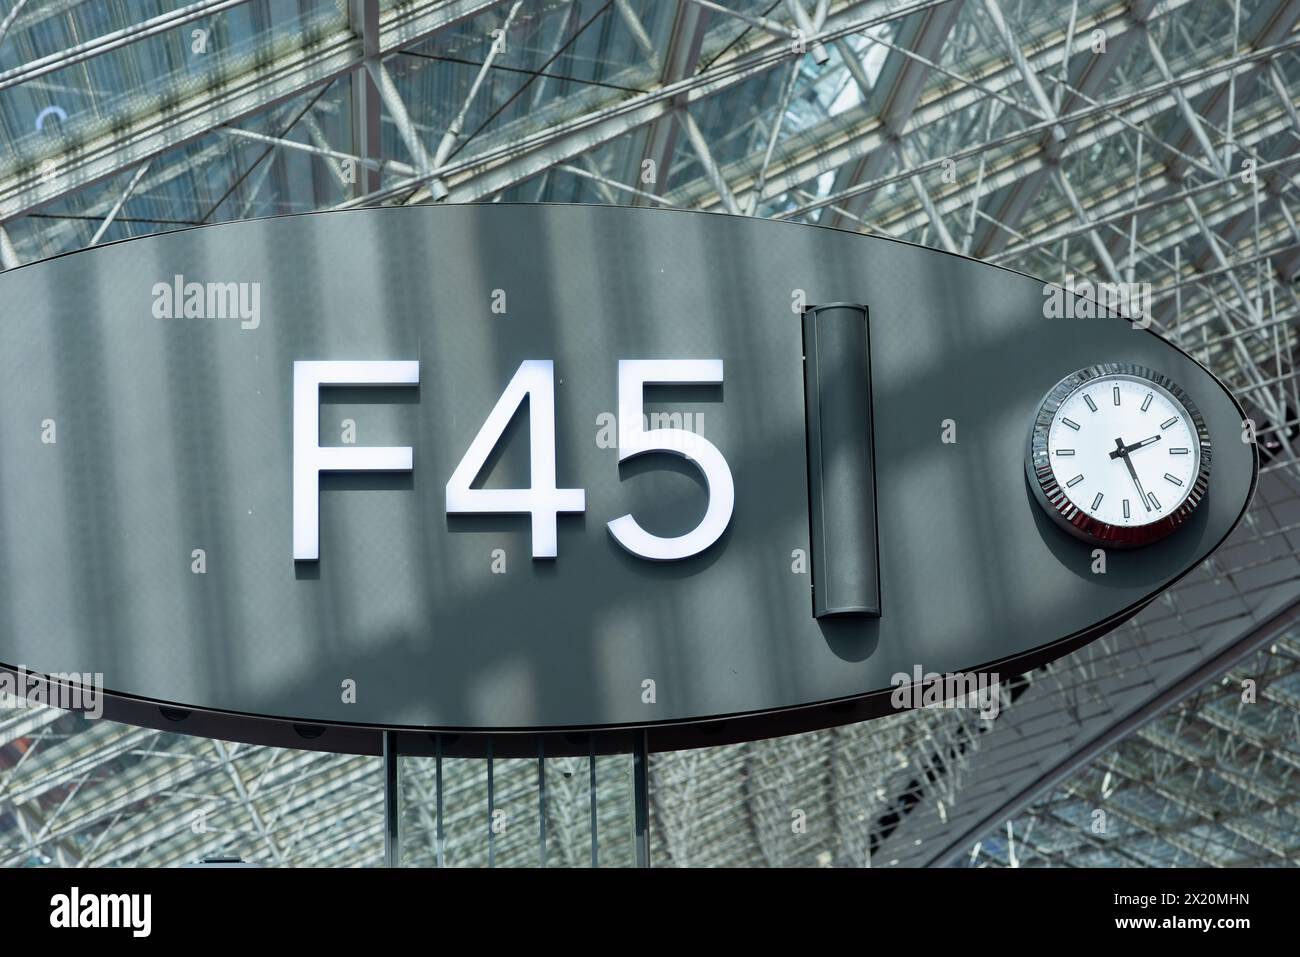 Moderno cartello aeroportuale F45 con orologio, che indica il cancello o la porta d'imbarco, situato in una struttura in acciaio e vetro presso l'aeroporto CDG di Parigi, Francia Foto Stock